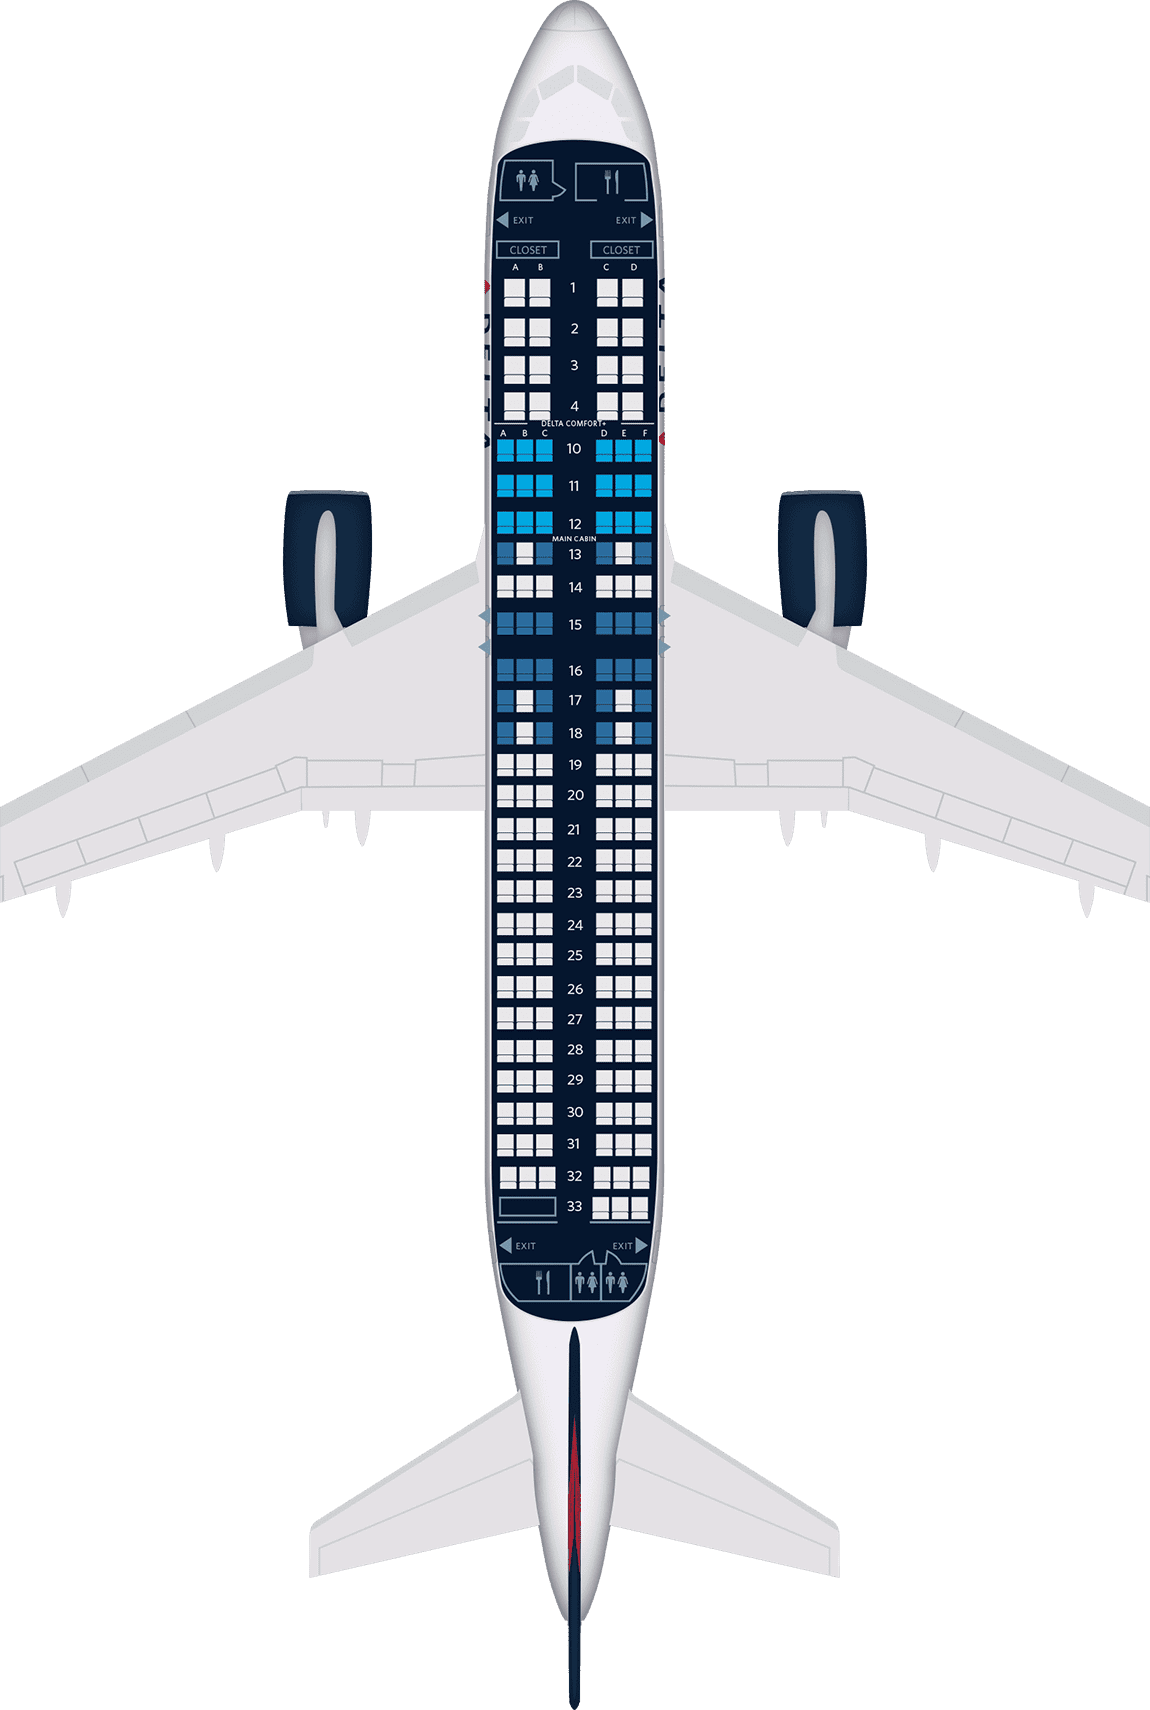 Airbus a320 200 схема